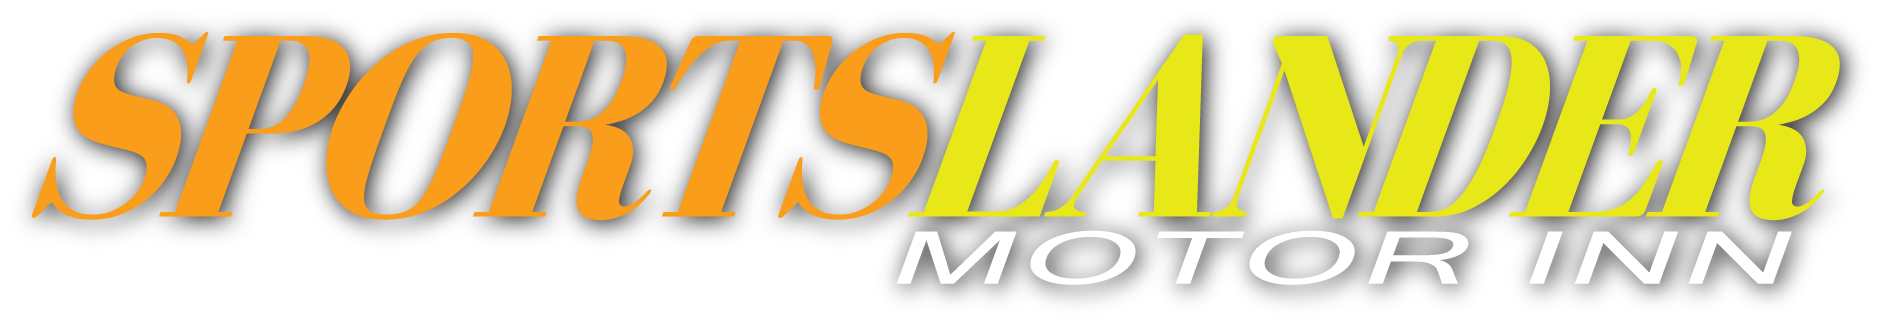 Sportslander-Logo-Header